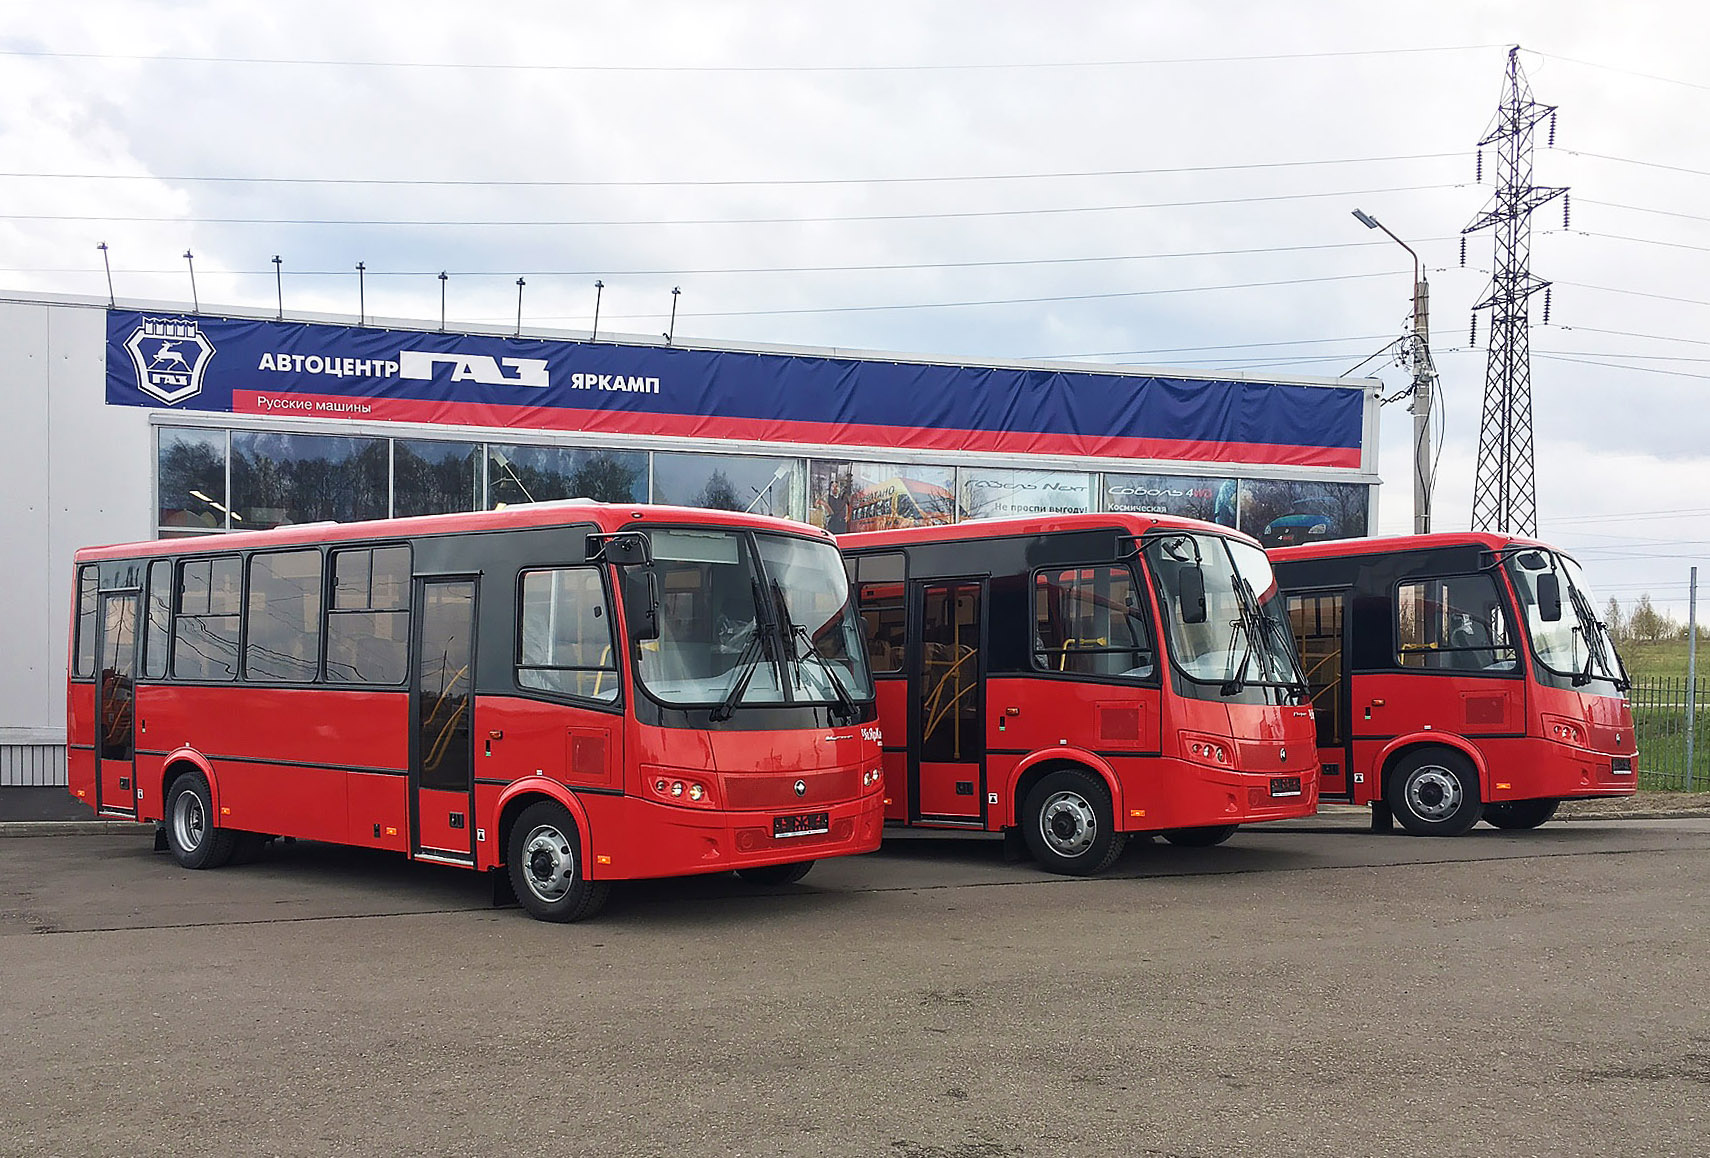 "ЯрКамп-Лизинг" произвел передачу в финансовую аренду трех автобусов ПАЗ "Вектор"